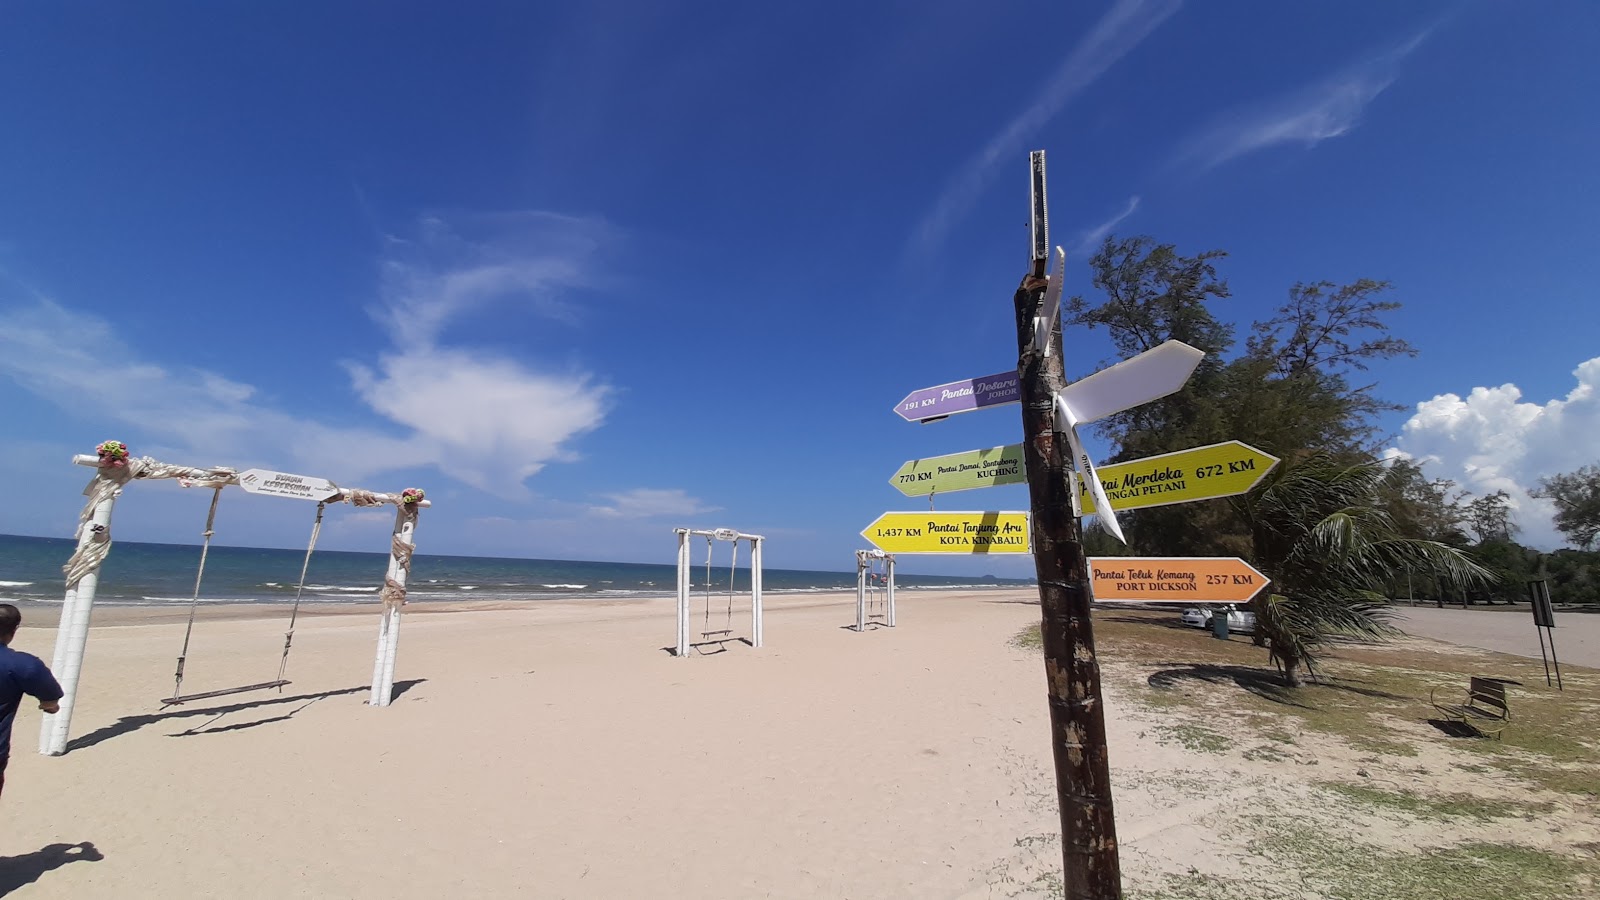 Foto de Hiburan Beach com areia brilhante superfície